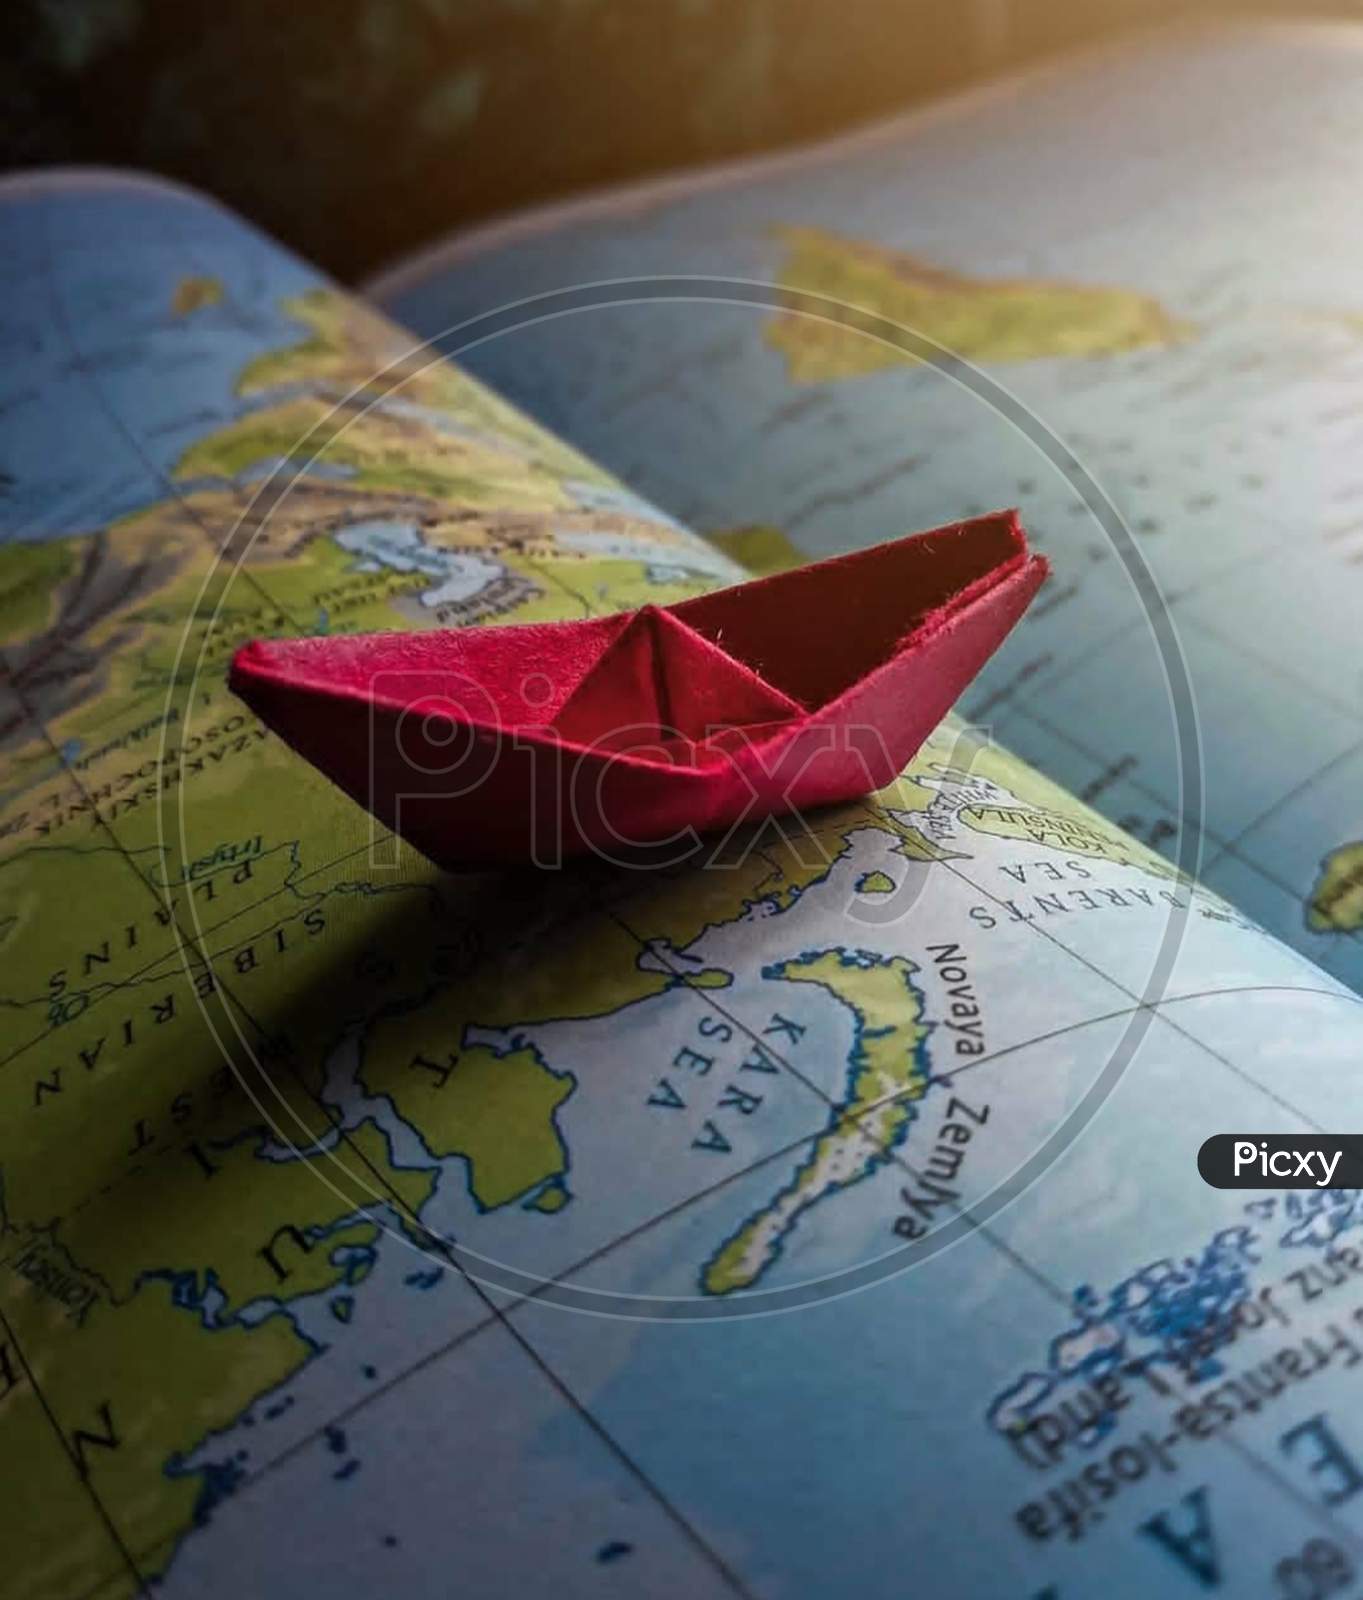 Art×Remove  World×Remove  Origami×Remove  Paper product×Remove  Map×Remove  Leaf×Remove  Paper×Remove